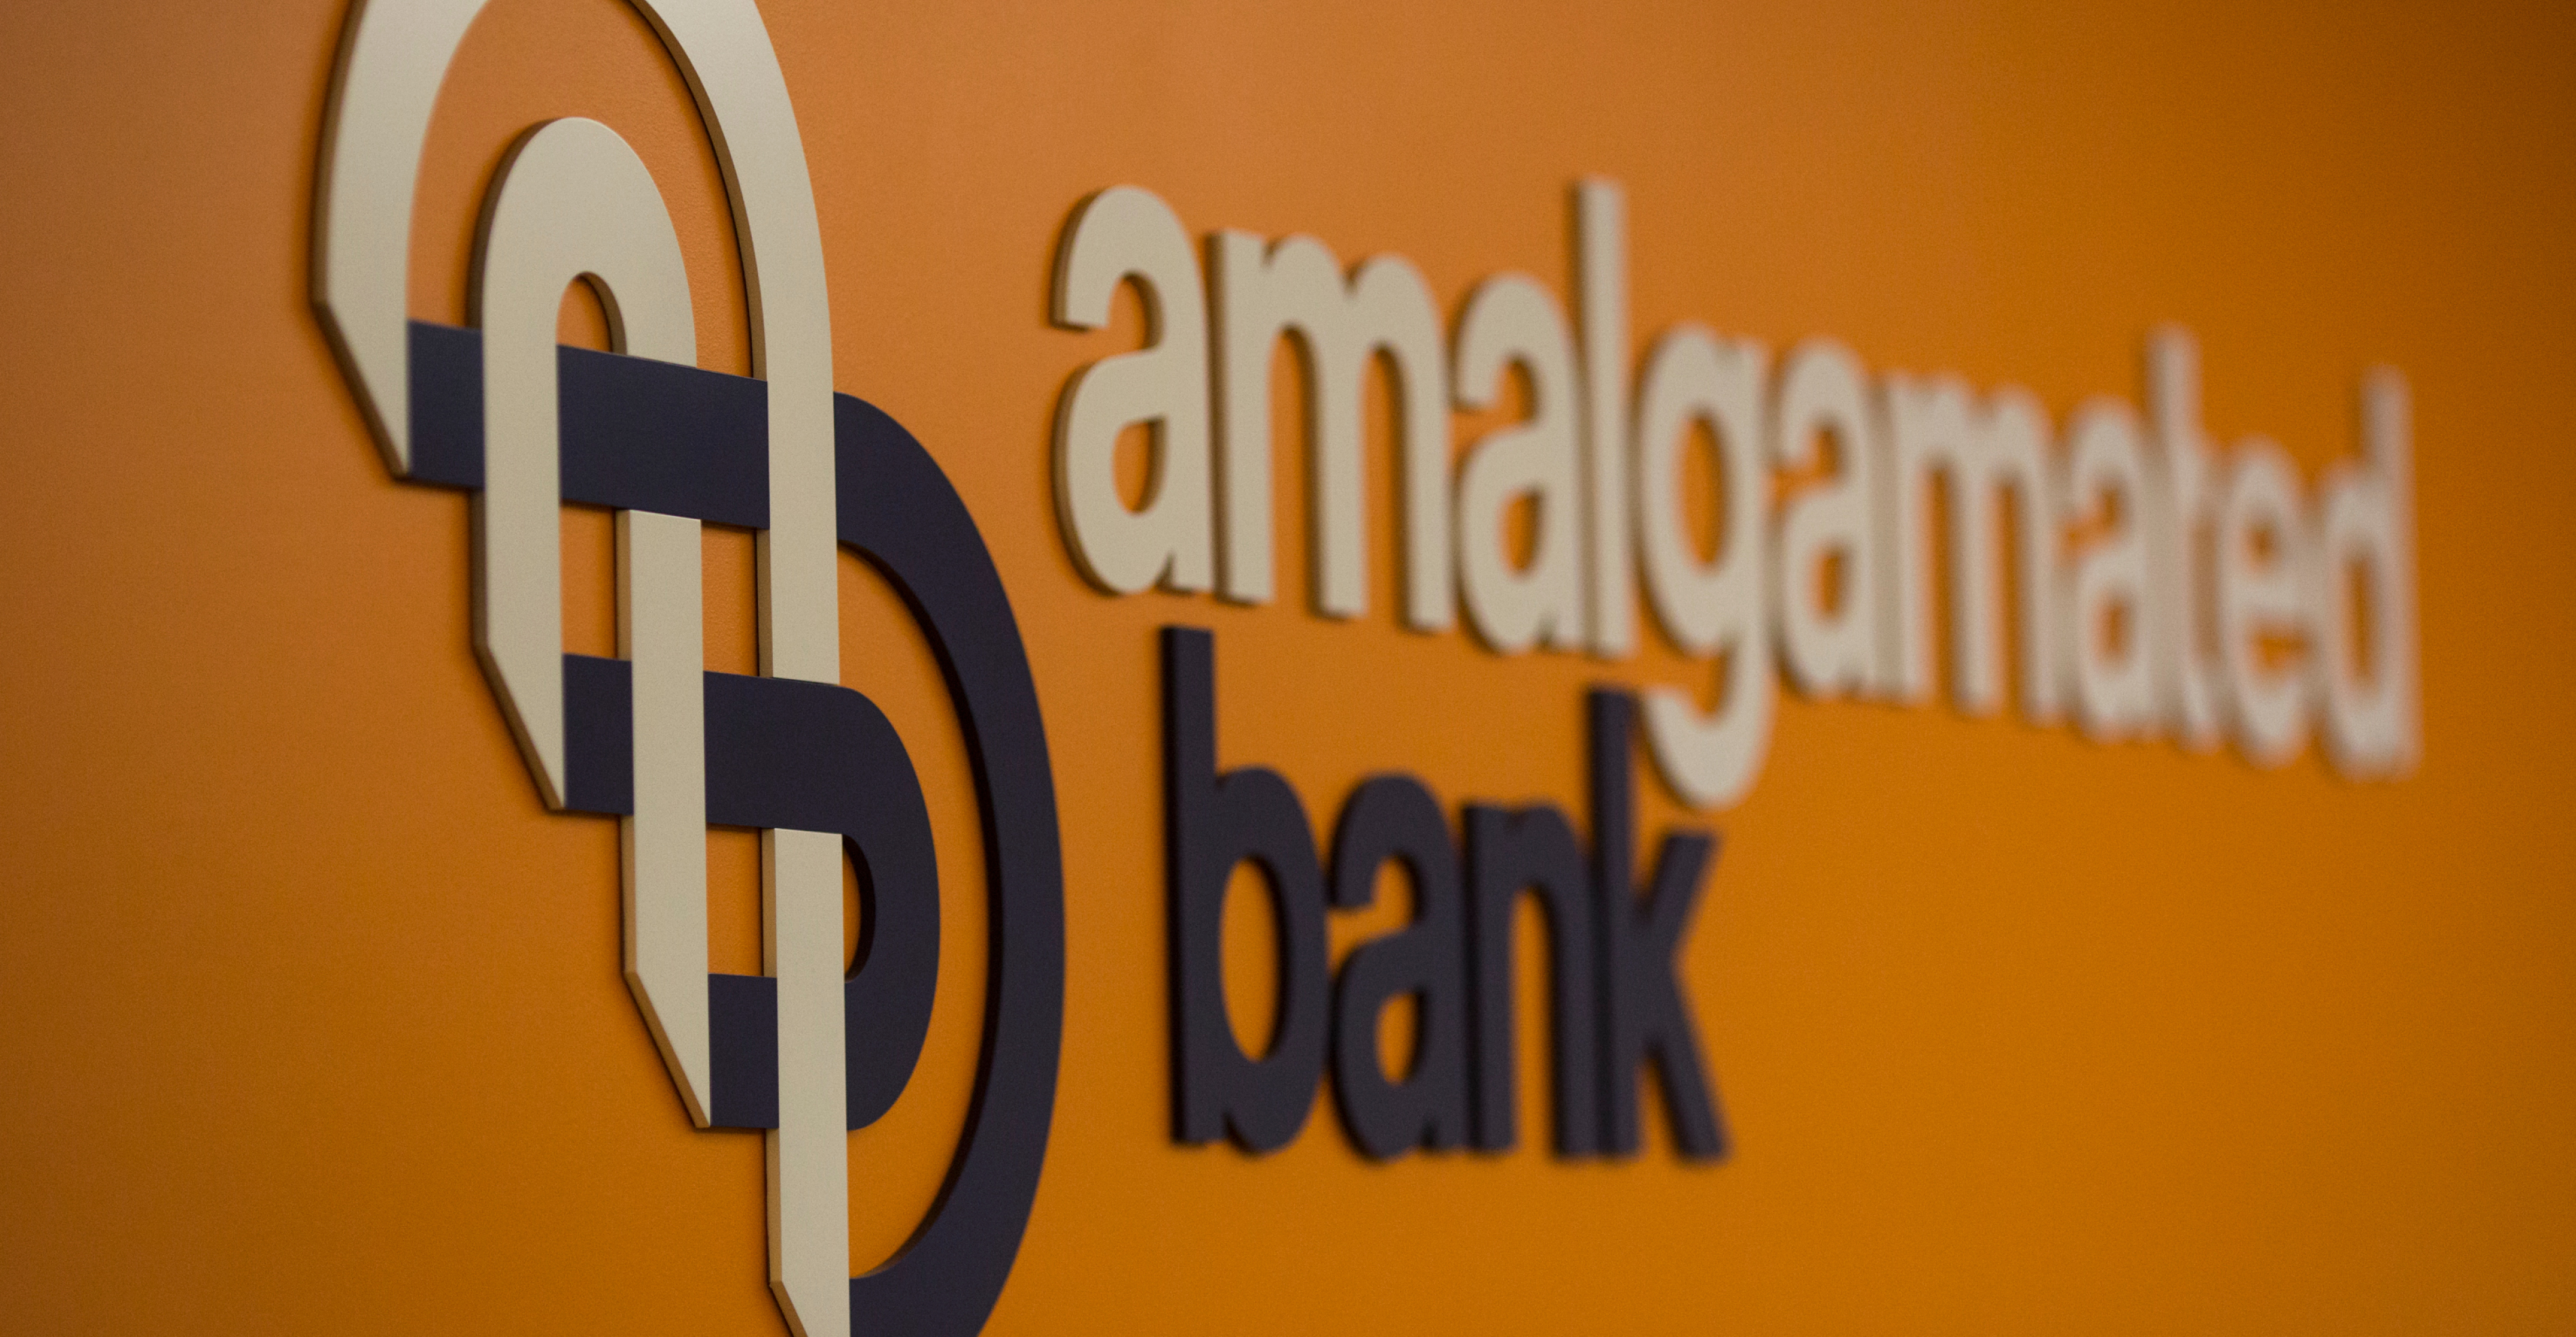 Amalgamated bank logo on wall